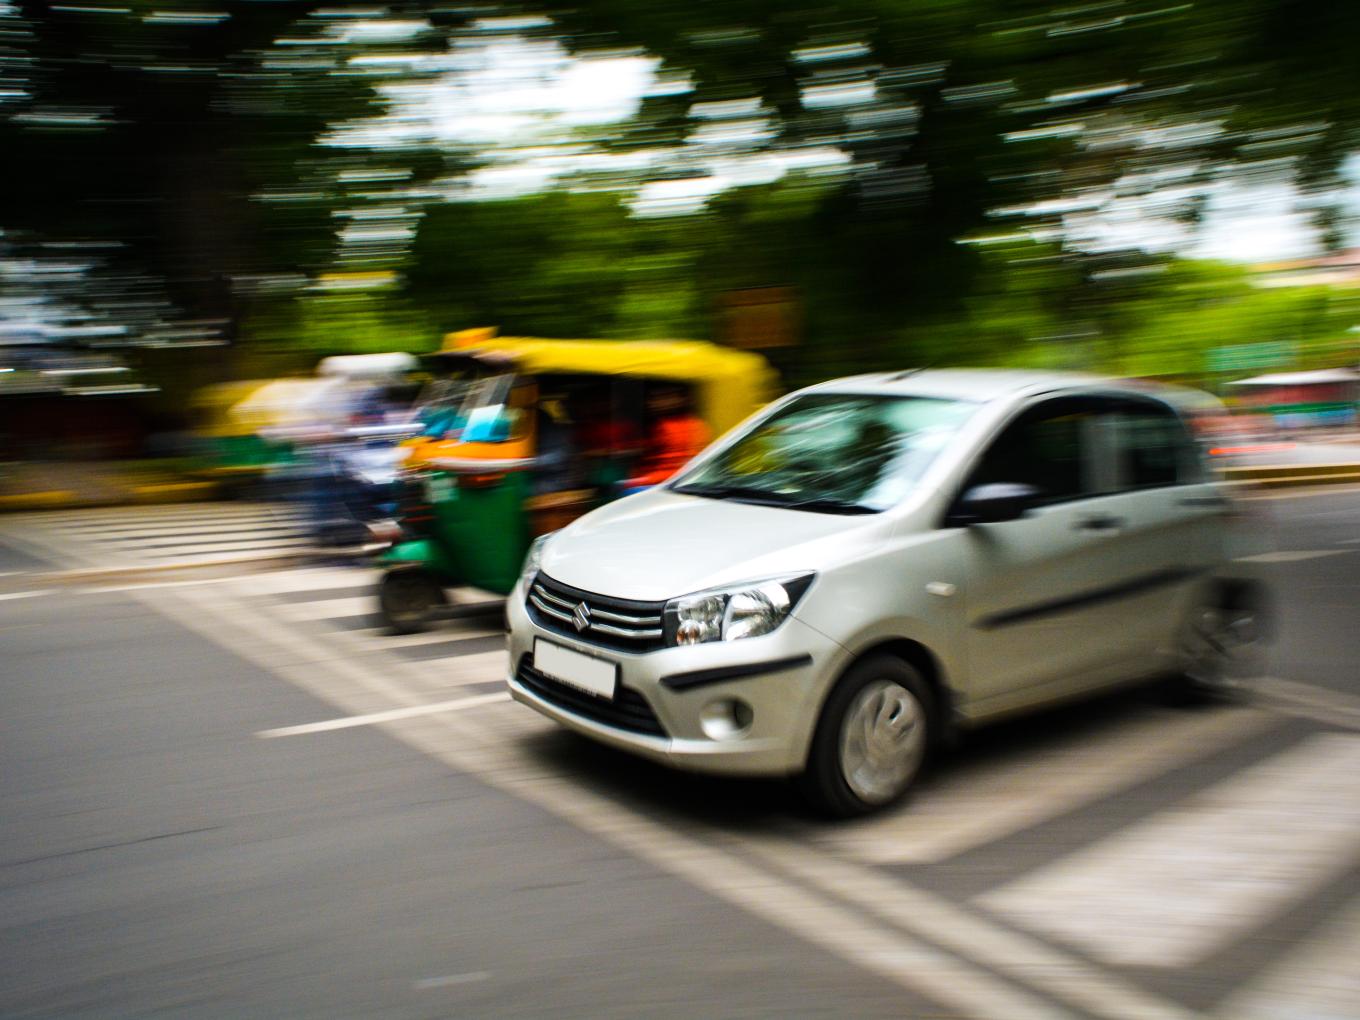 Ola, Uber Not To Blame For Auto Slowdown: Maruti Suzuki